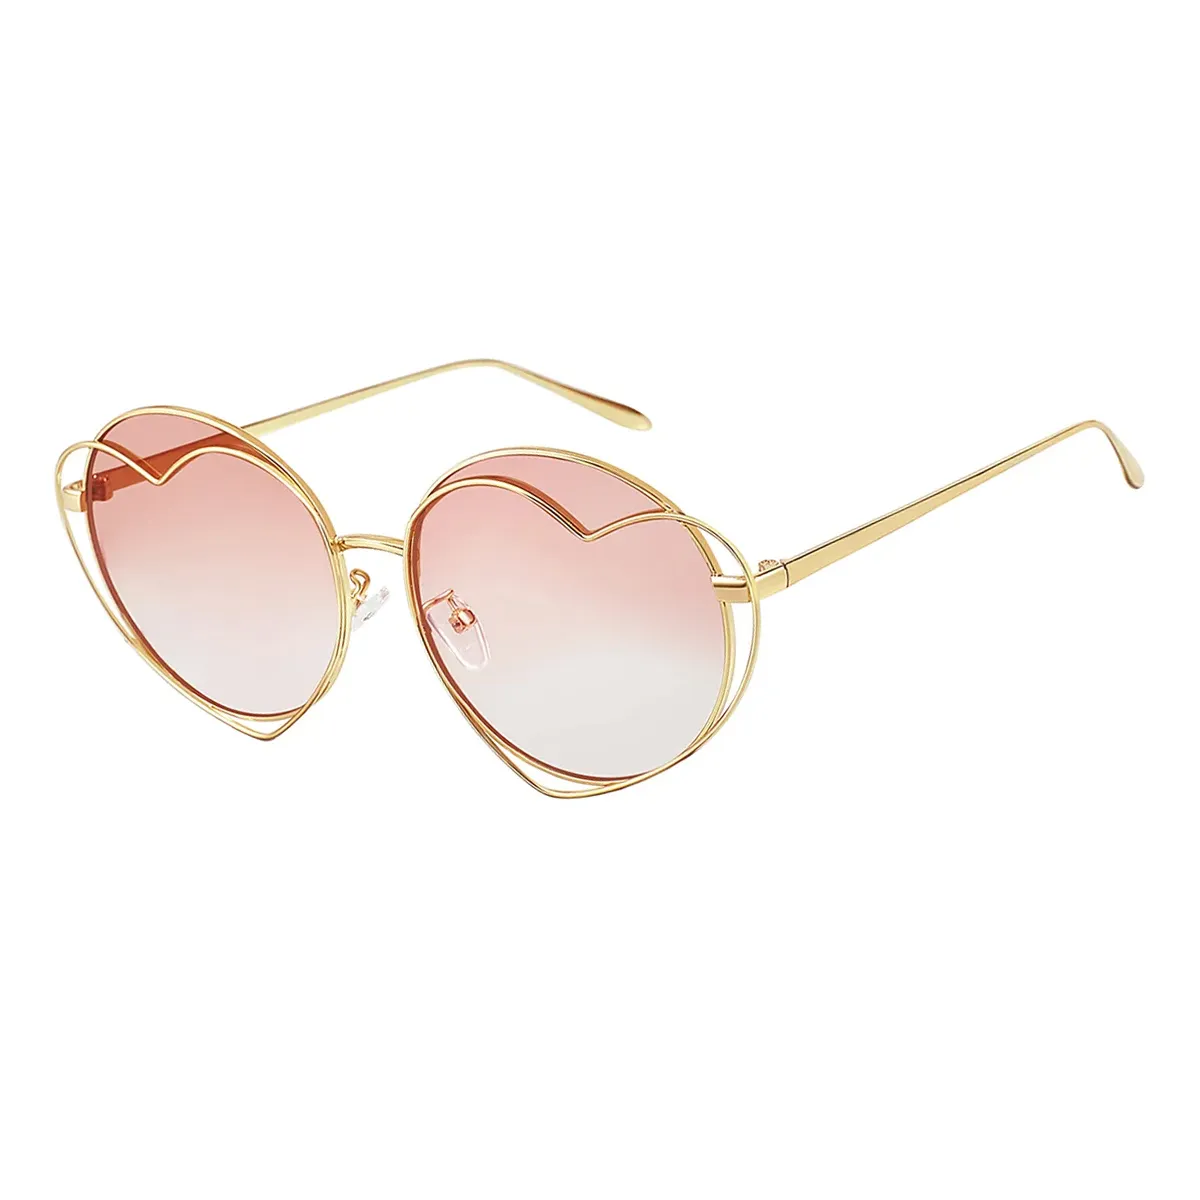 Myra - Round Gold/1 Sunglasses for Women